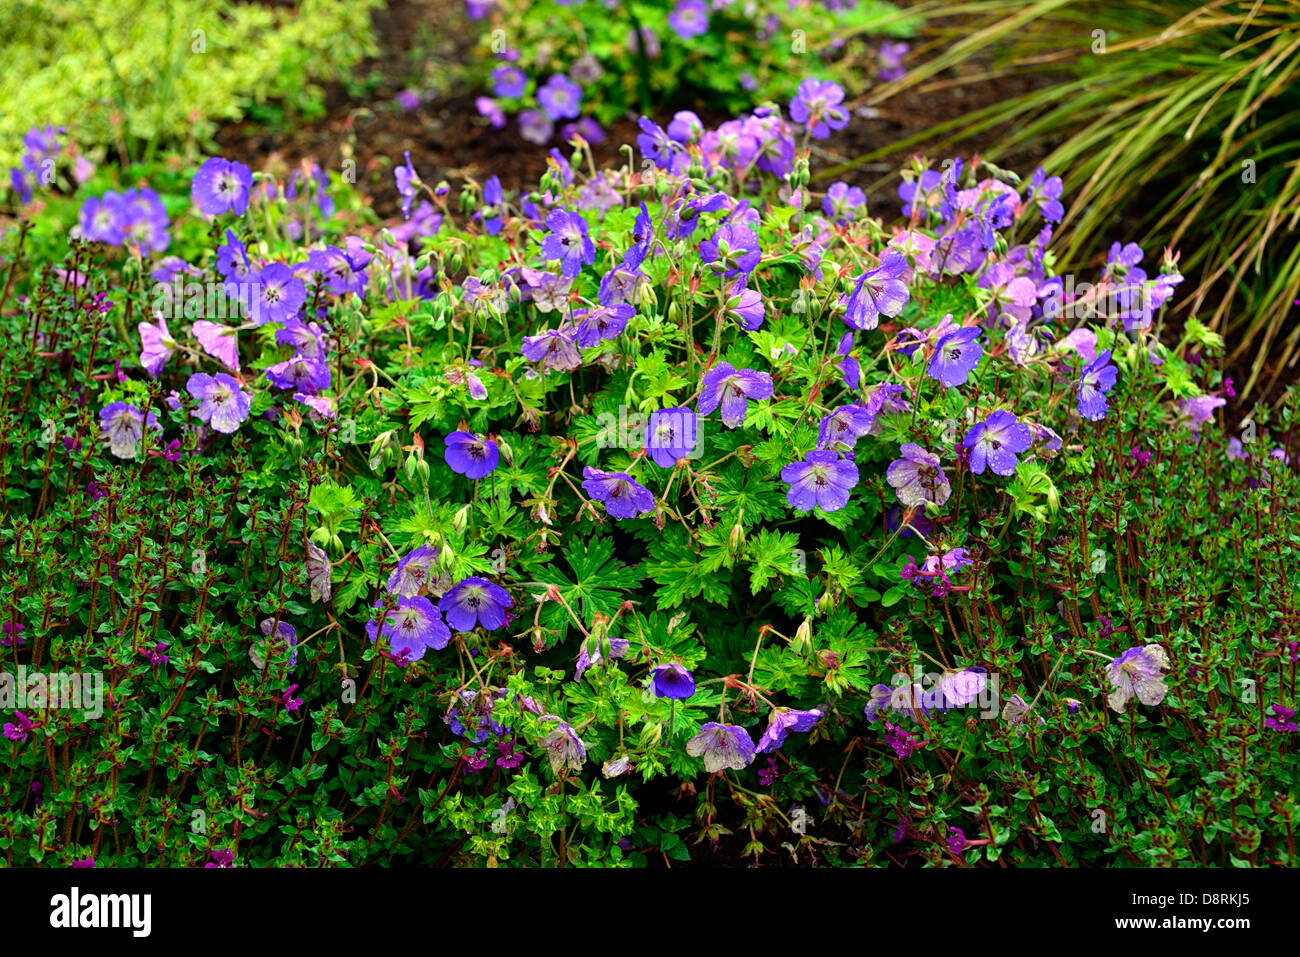 Geranium Rozanne Storchschnabel Blumen Stauden blau lila Pflanze ...